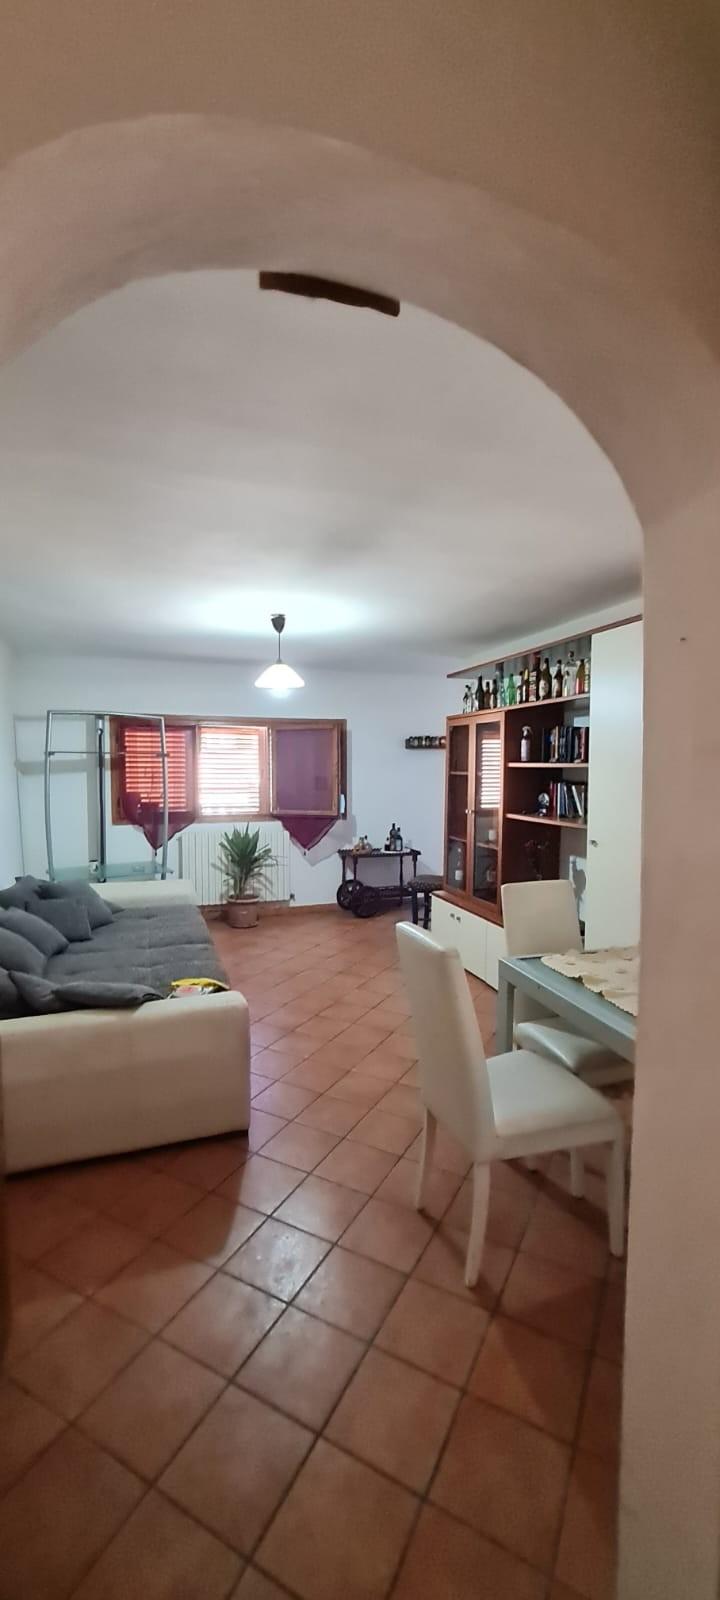 Appartamento in vendita a Terricciola, 4 locali, prezzo € 99.000 | PortaleAgenzieImmobiliari.it